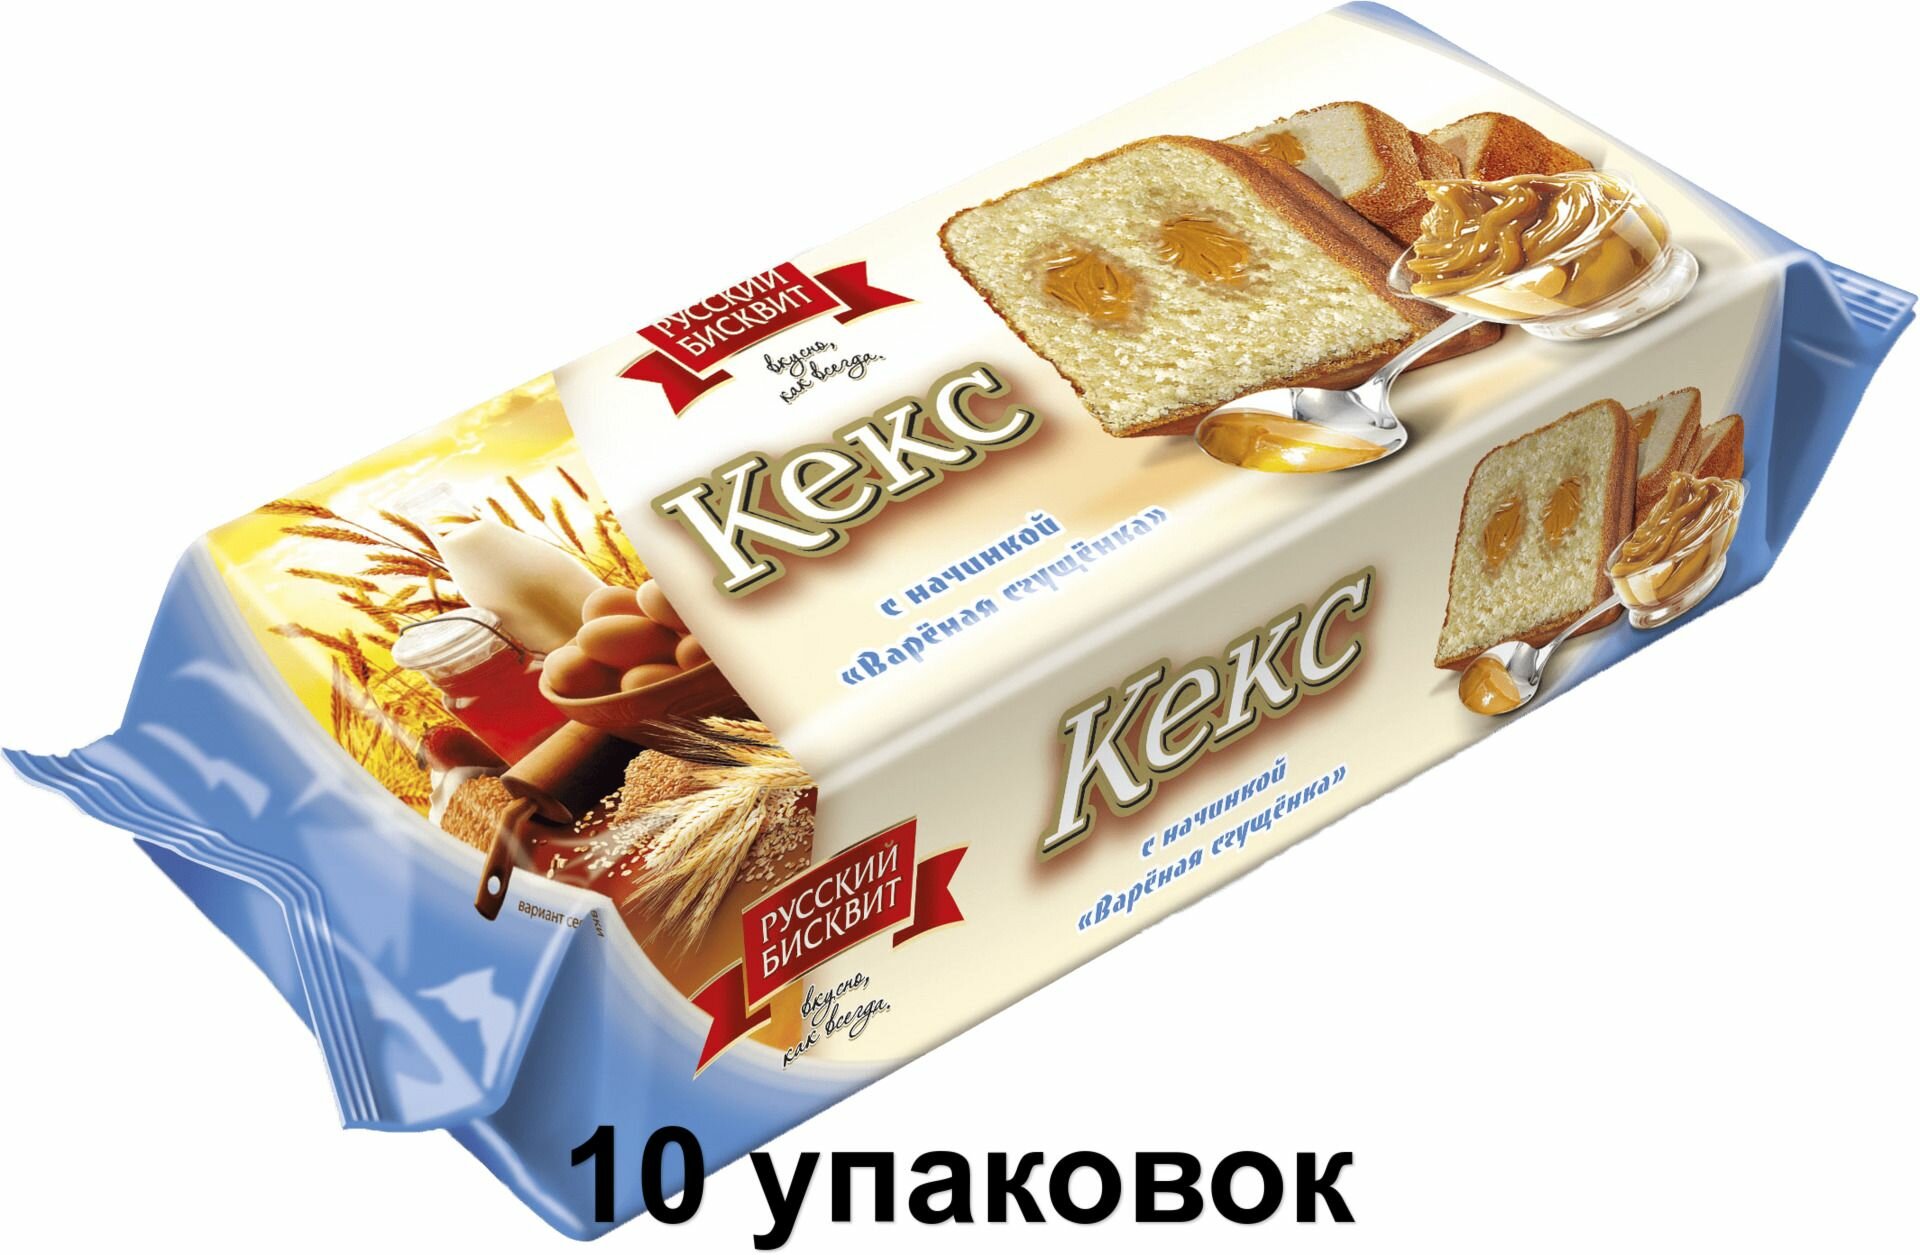 Русский бисквит Кекс Вареная сгущенка, 225 г, 10 уп